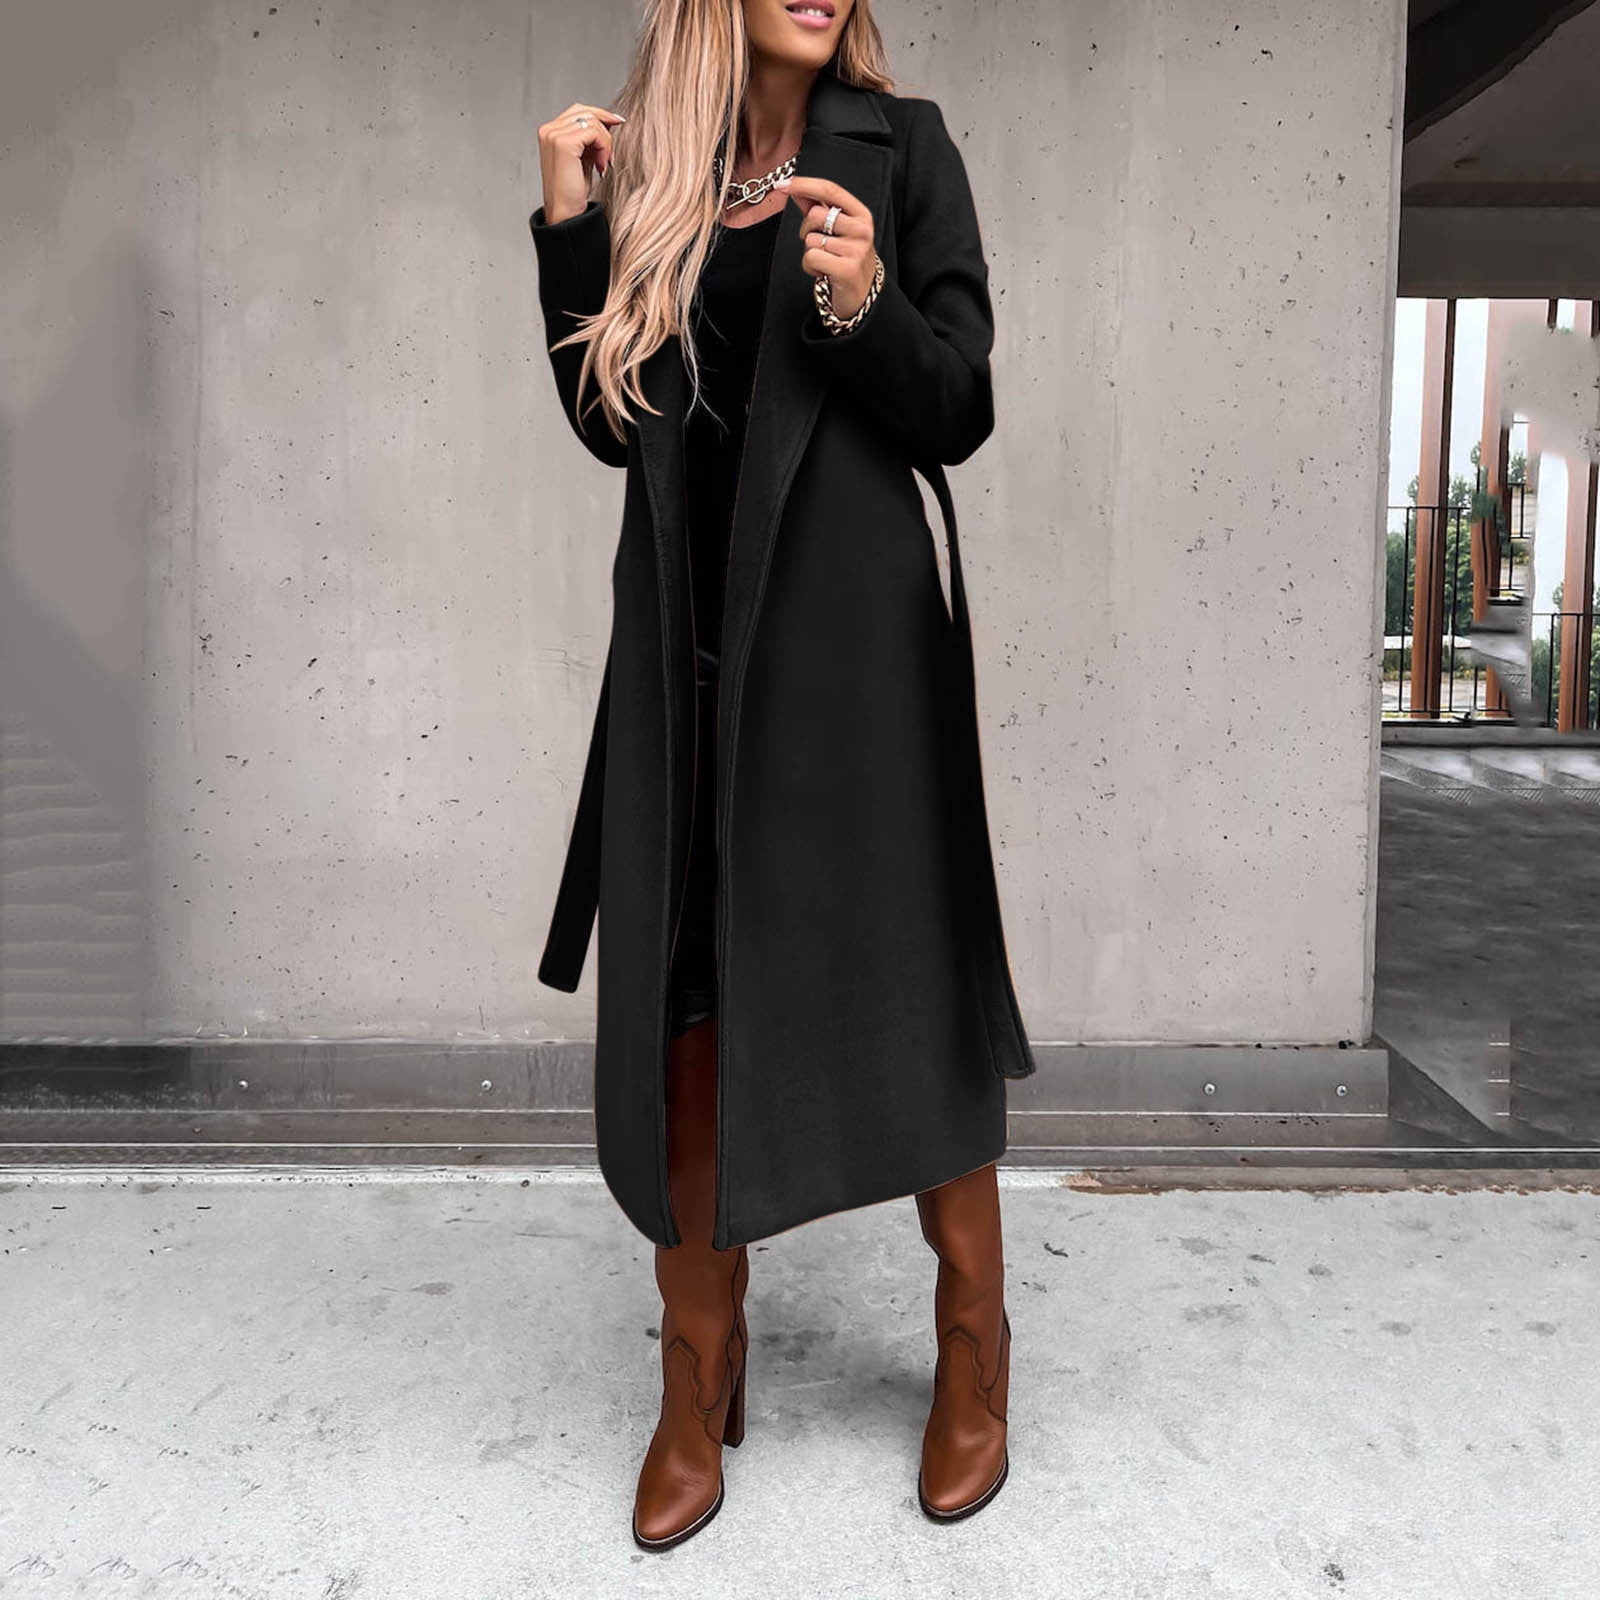 MRULIC winter coats for women Women's Faux Wool Coat Blouse Thin Coat  Trench Long Jacket Ladies Slim Long Belt Elegant Overcoat Outwear Black +  XXL